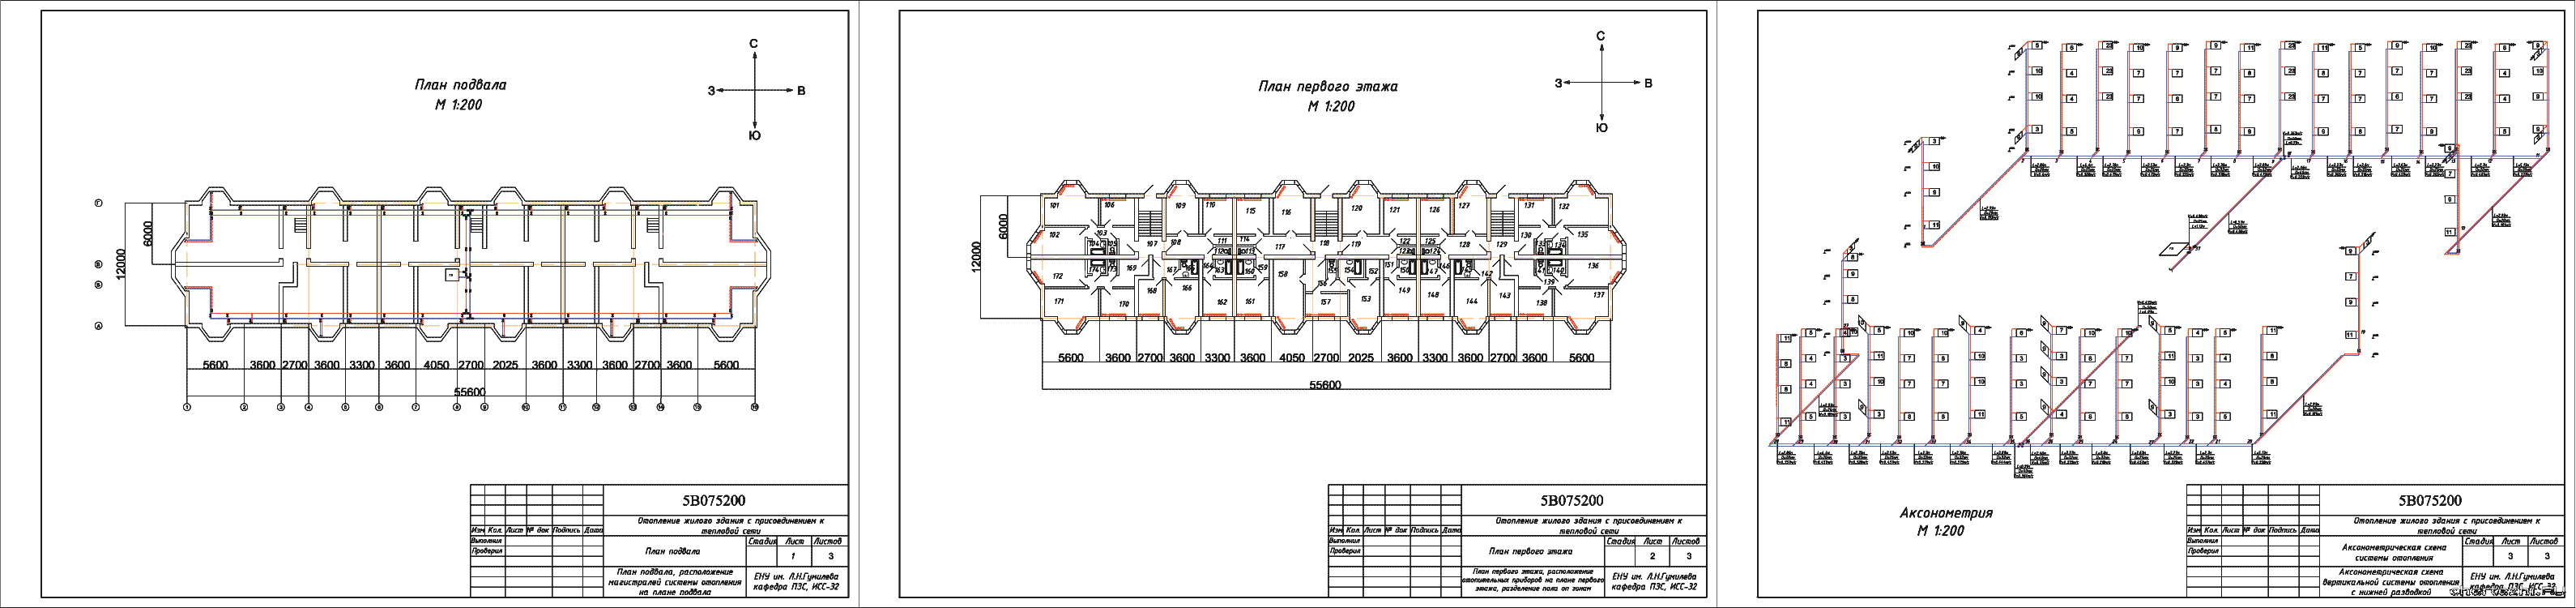 Курсовой проект - Система отопления 4-х этажного жилого здания с присоединением к тепловой сети г. Актобе